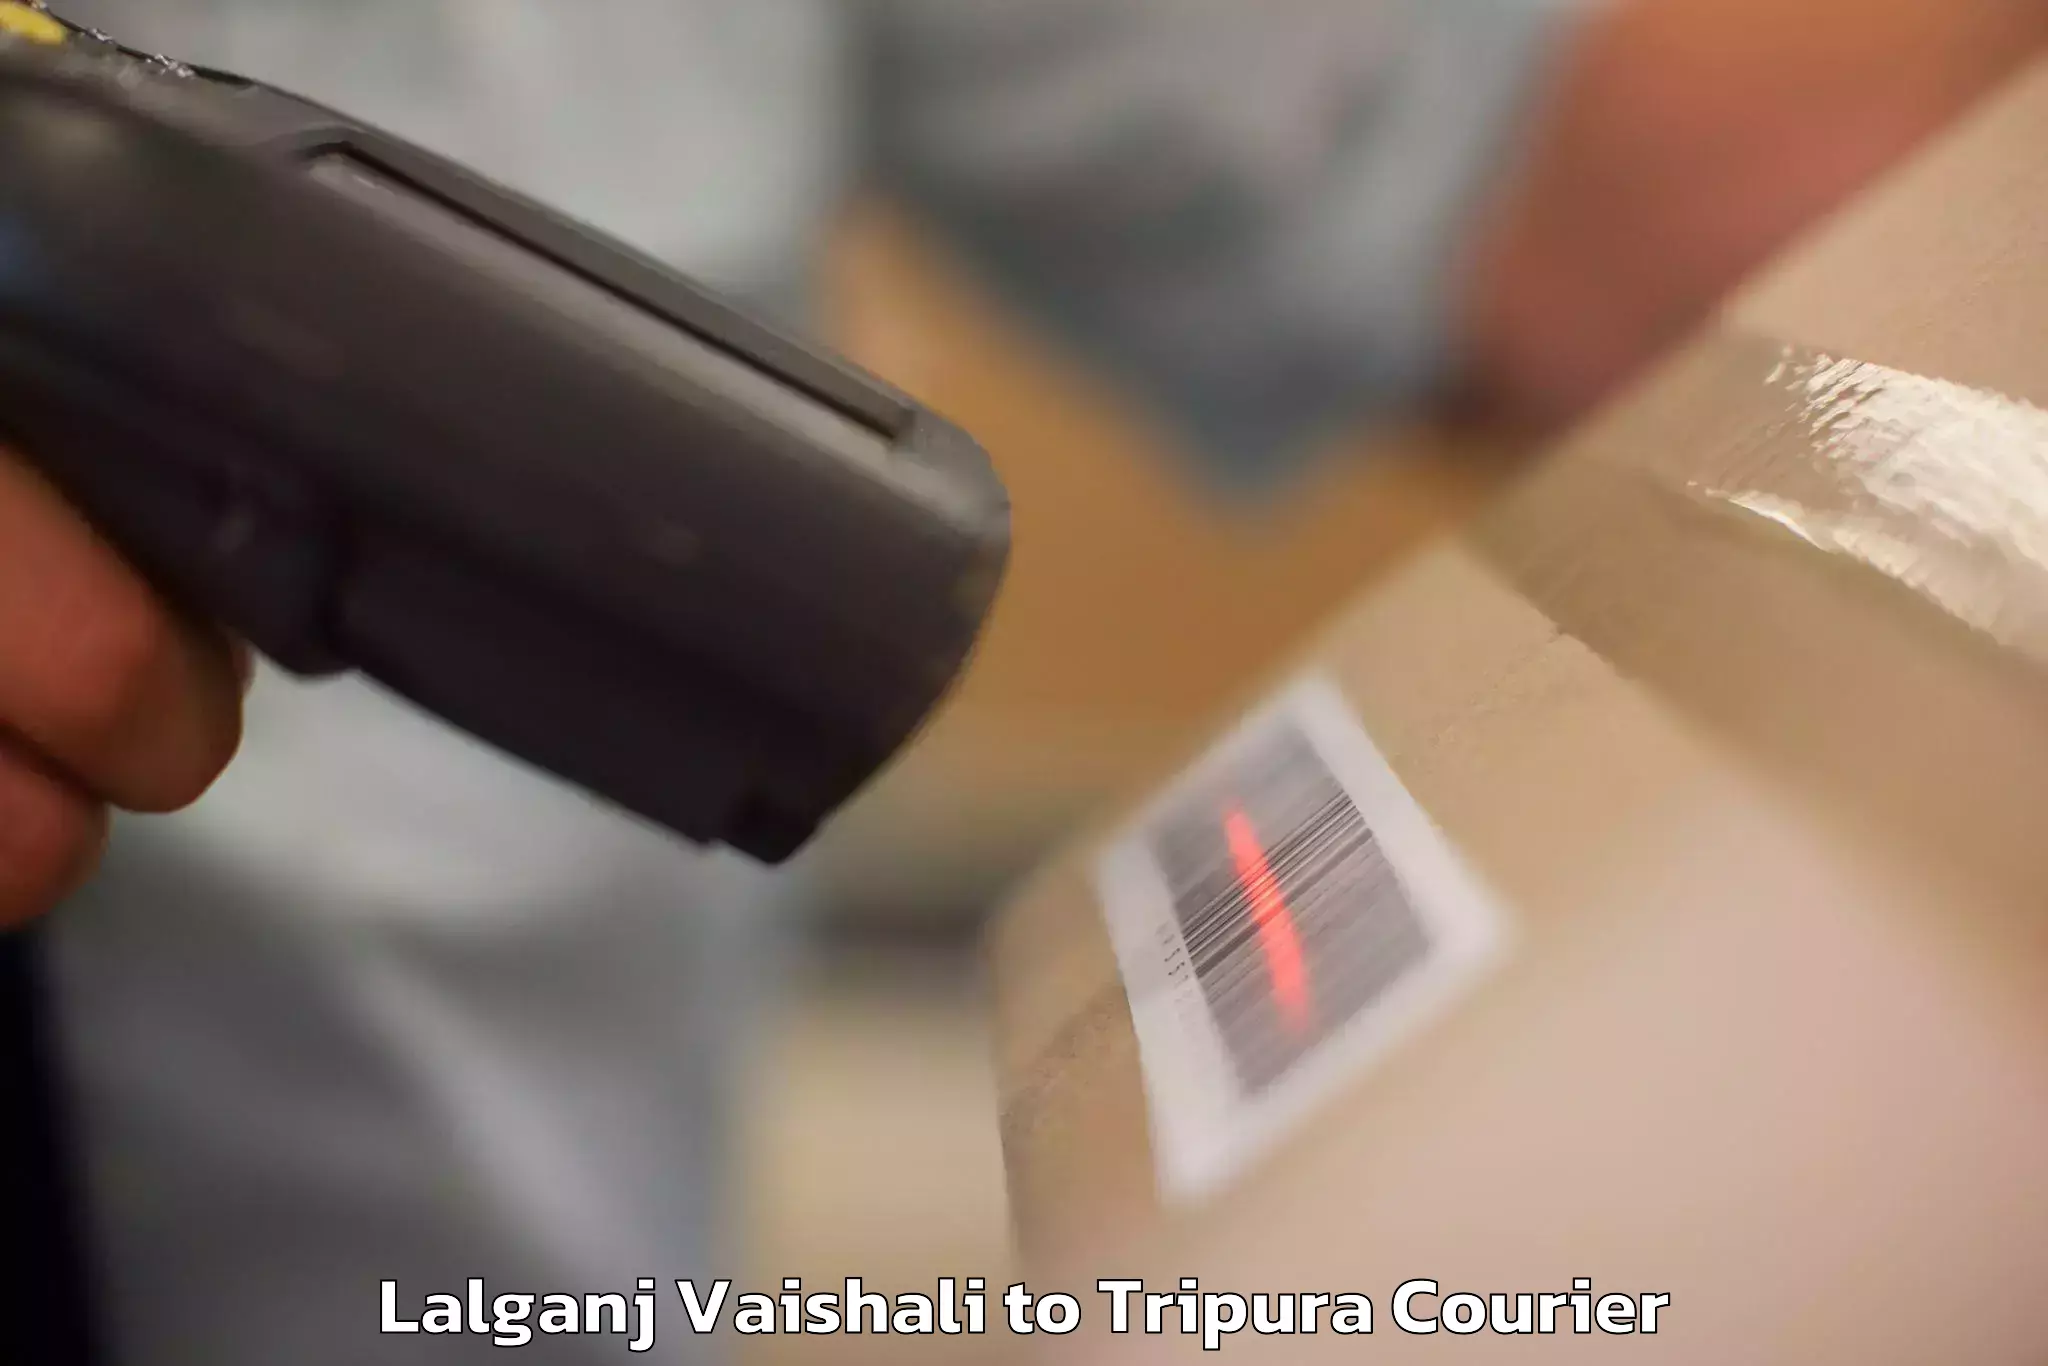 Personalized luggage shipping Lalganj Vaishali to Udaipur Tripura